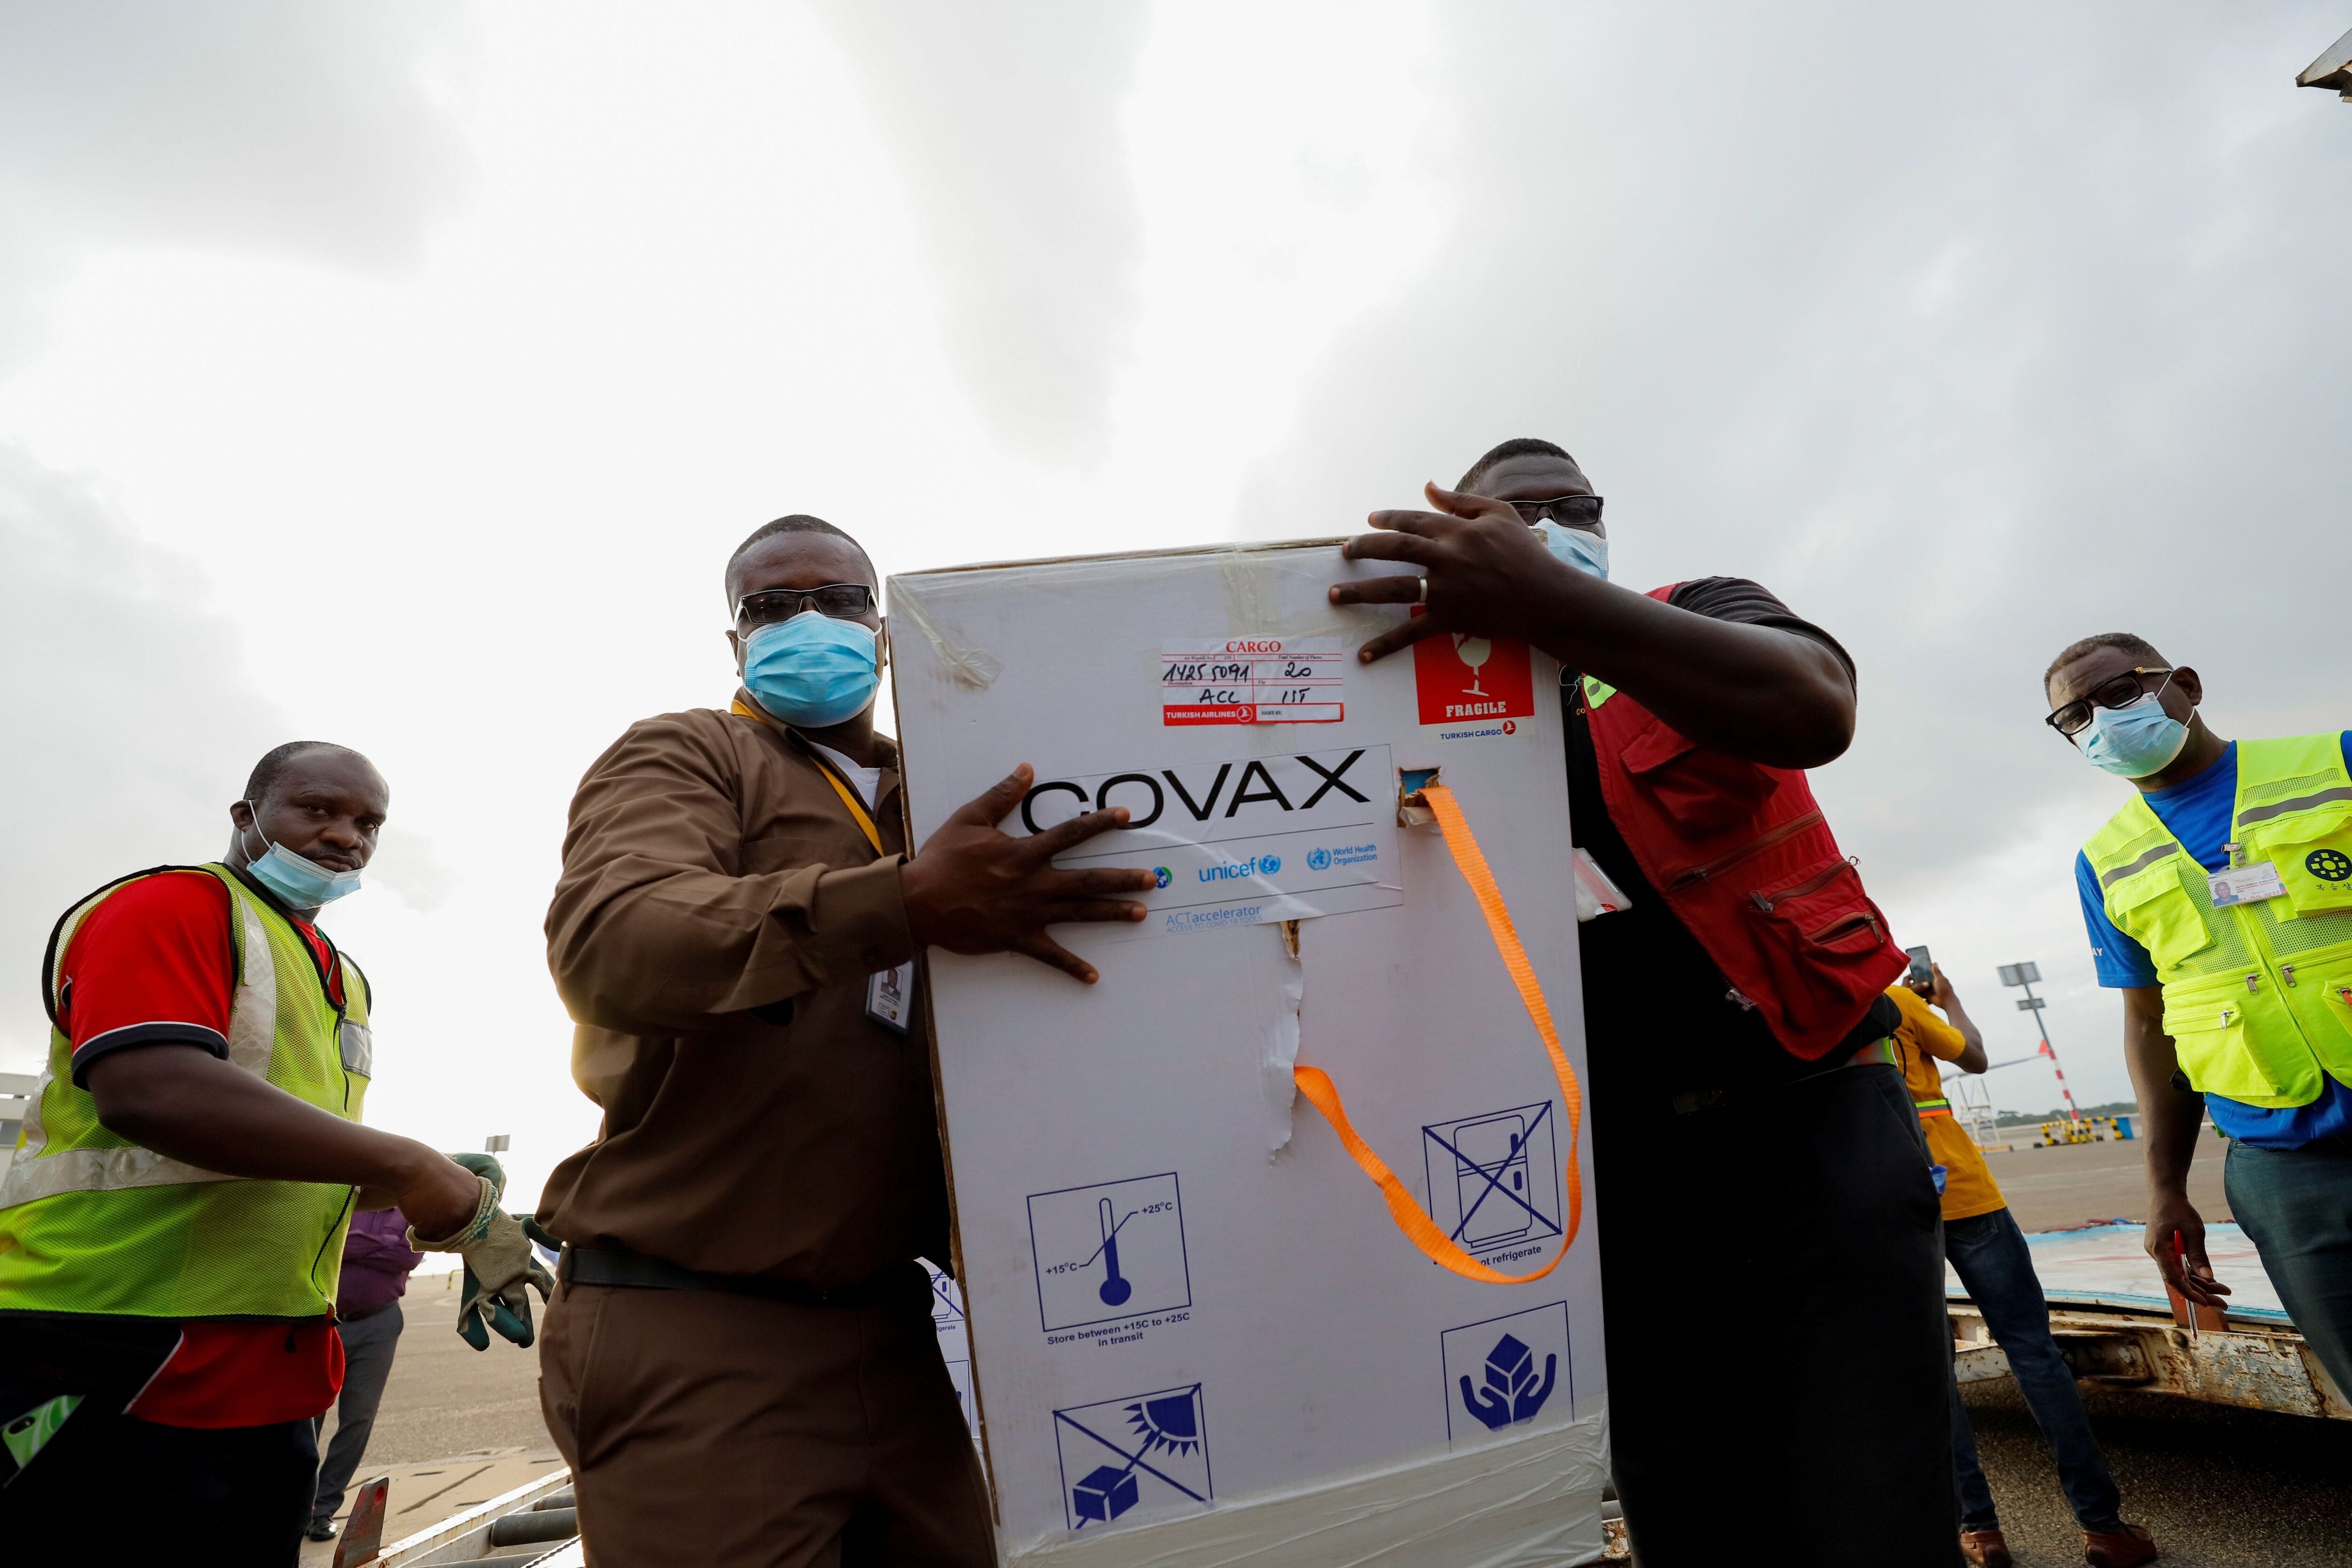 El modelo que incluye el mecanismo COVAX que permite comprar vacunas y otros insumos para la pandemia y garantizar el acceso a la población de países de bajos y medianos recursos debería ser fortalecido en la estrategia global para la preparación de futuras pandemias, según el panel de expertos/ REUTERS/Francis Kokoroko